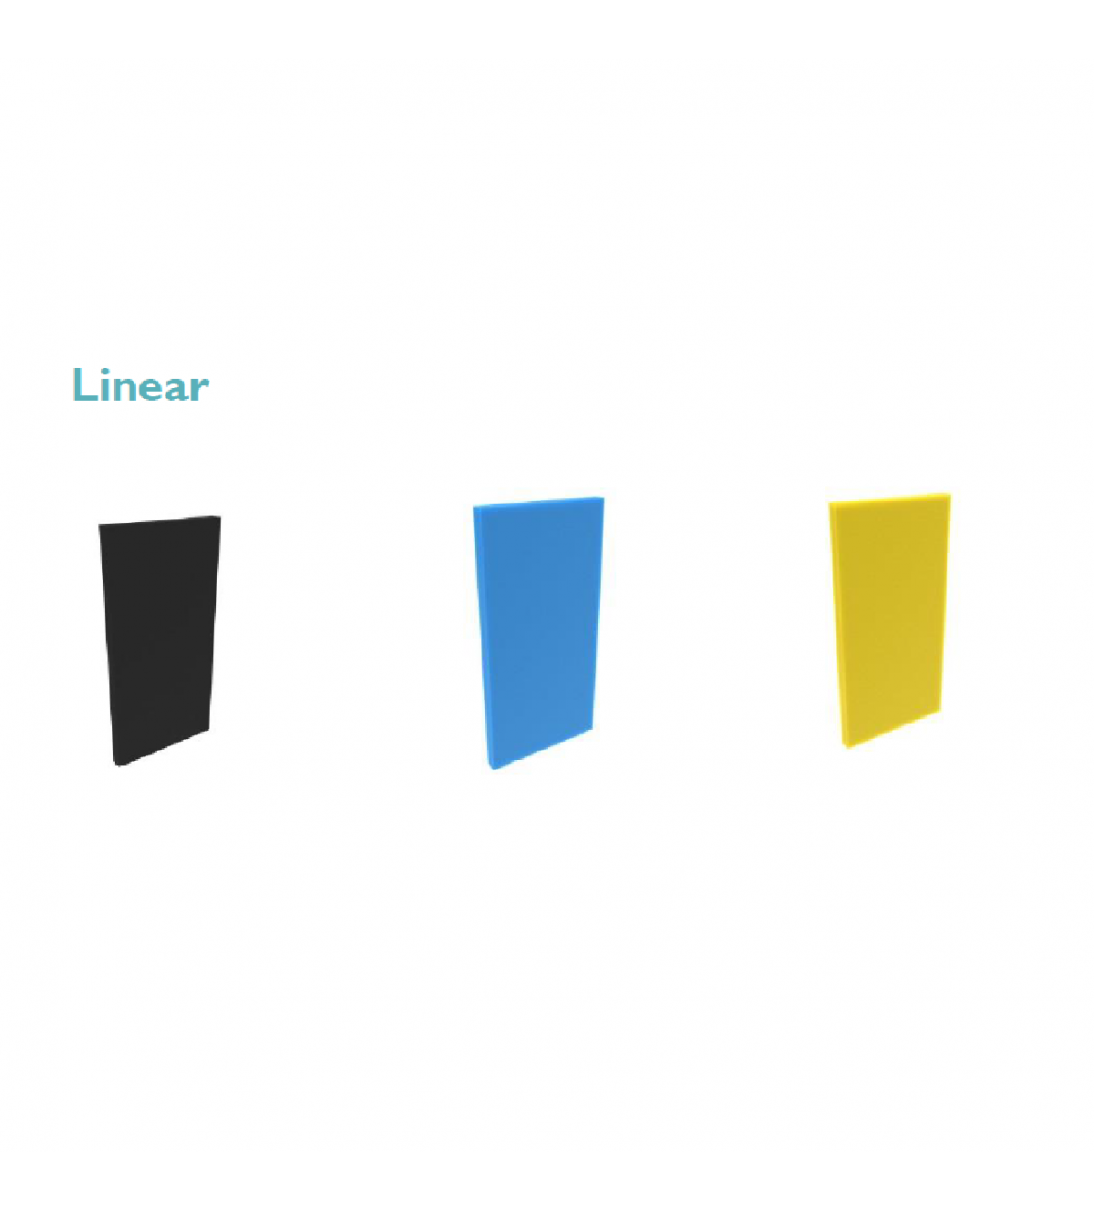 Pannelli Fonoassorbenti Linear 100x100x1cm  Densità 30 kg/mc nero,azzurro,giallo